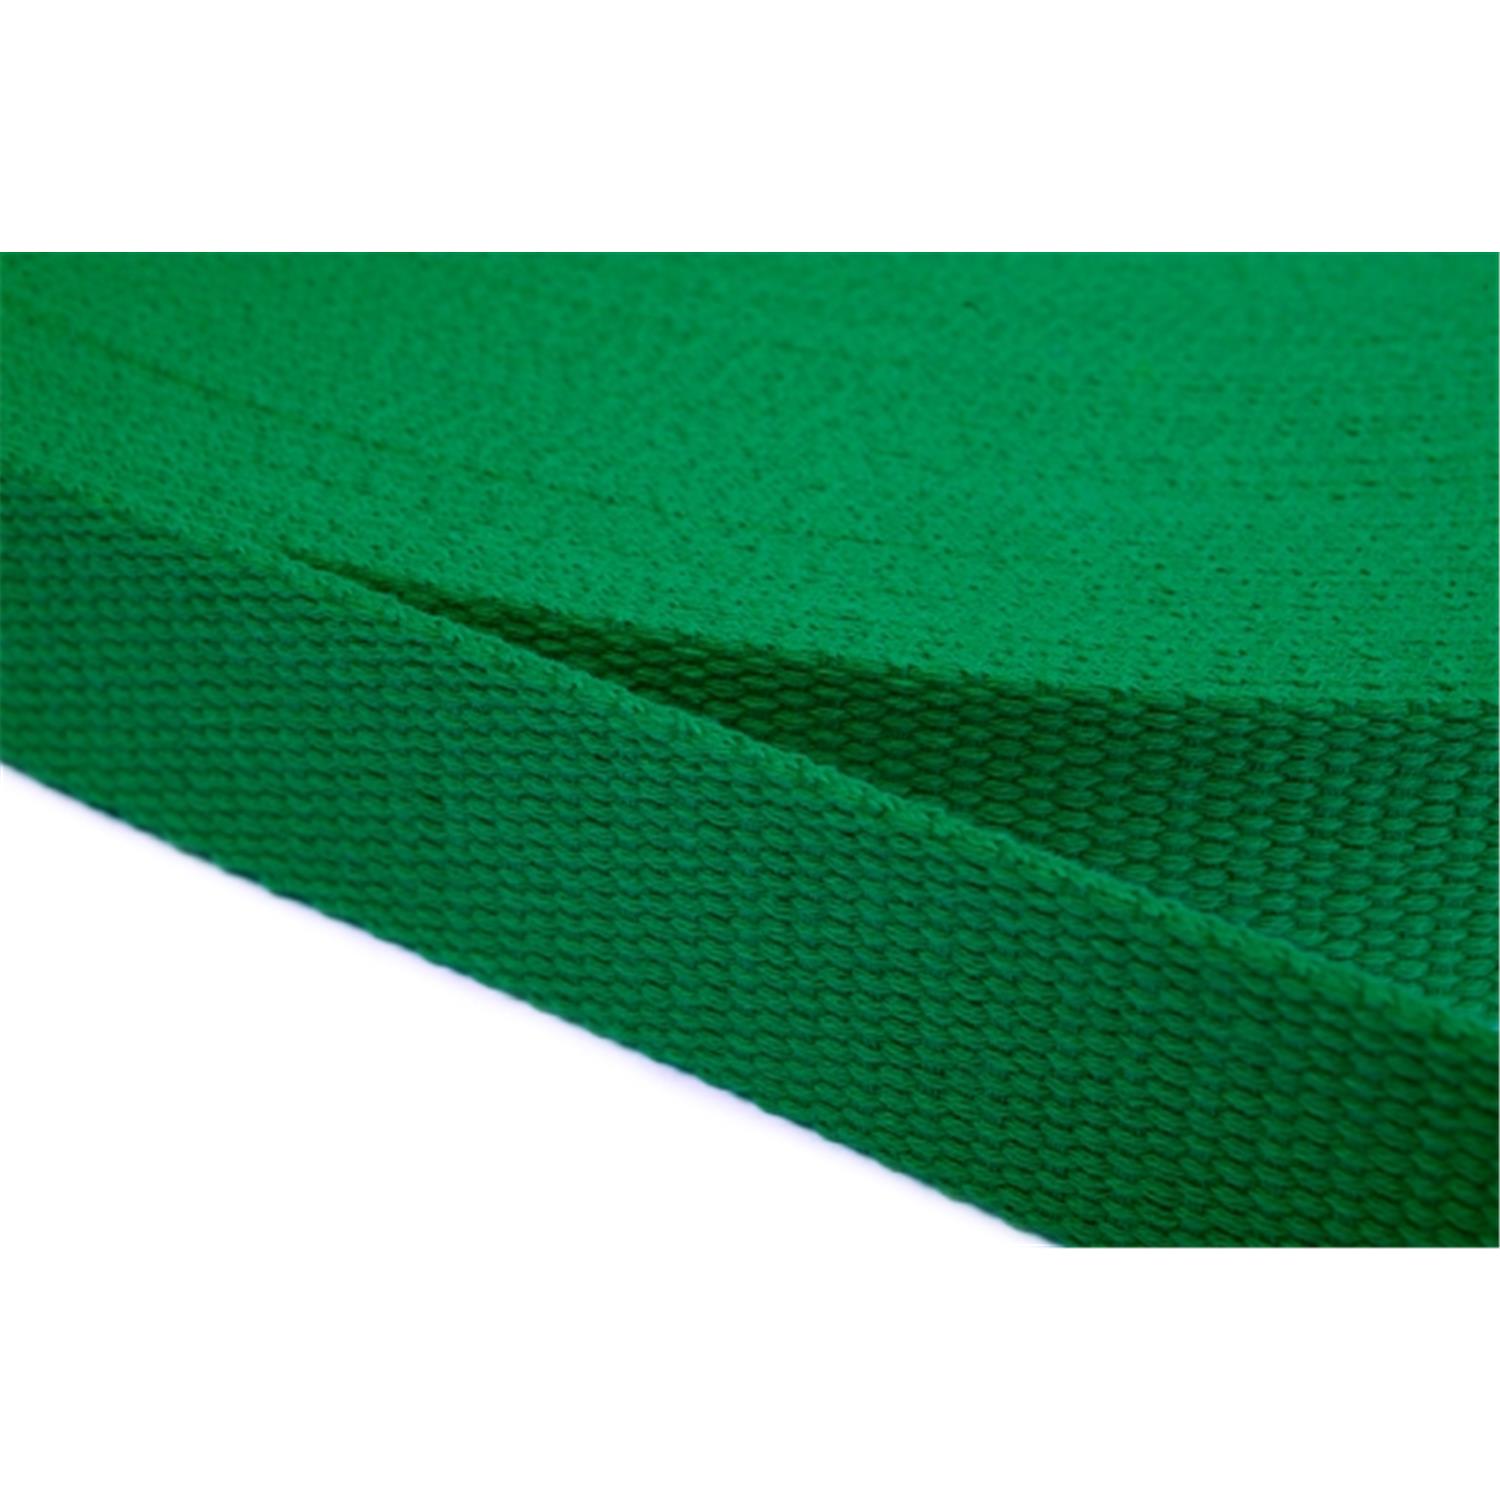 Gurtband aus Baumwolle 10mm in 20 Farben 16 - grün 6 Meter